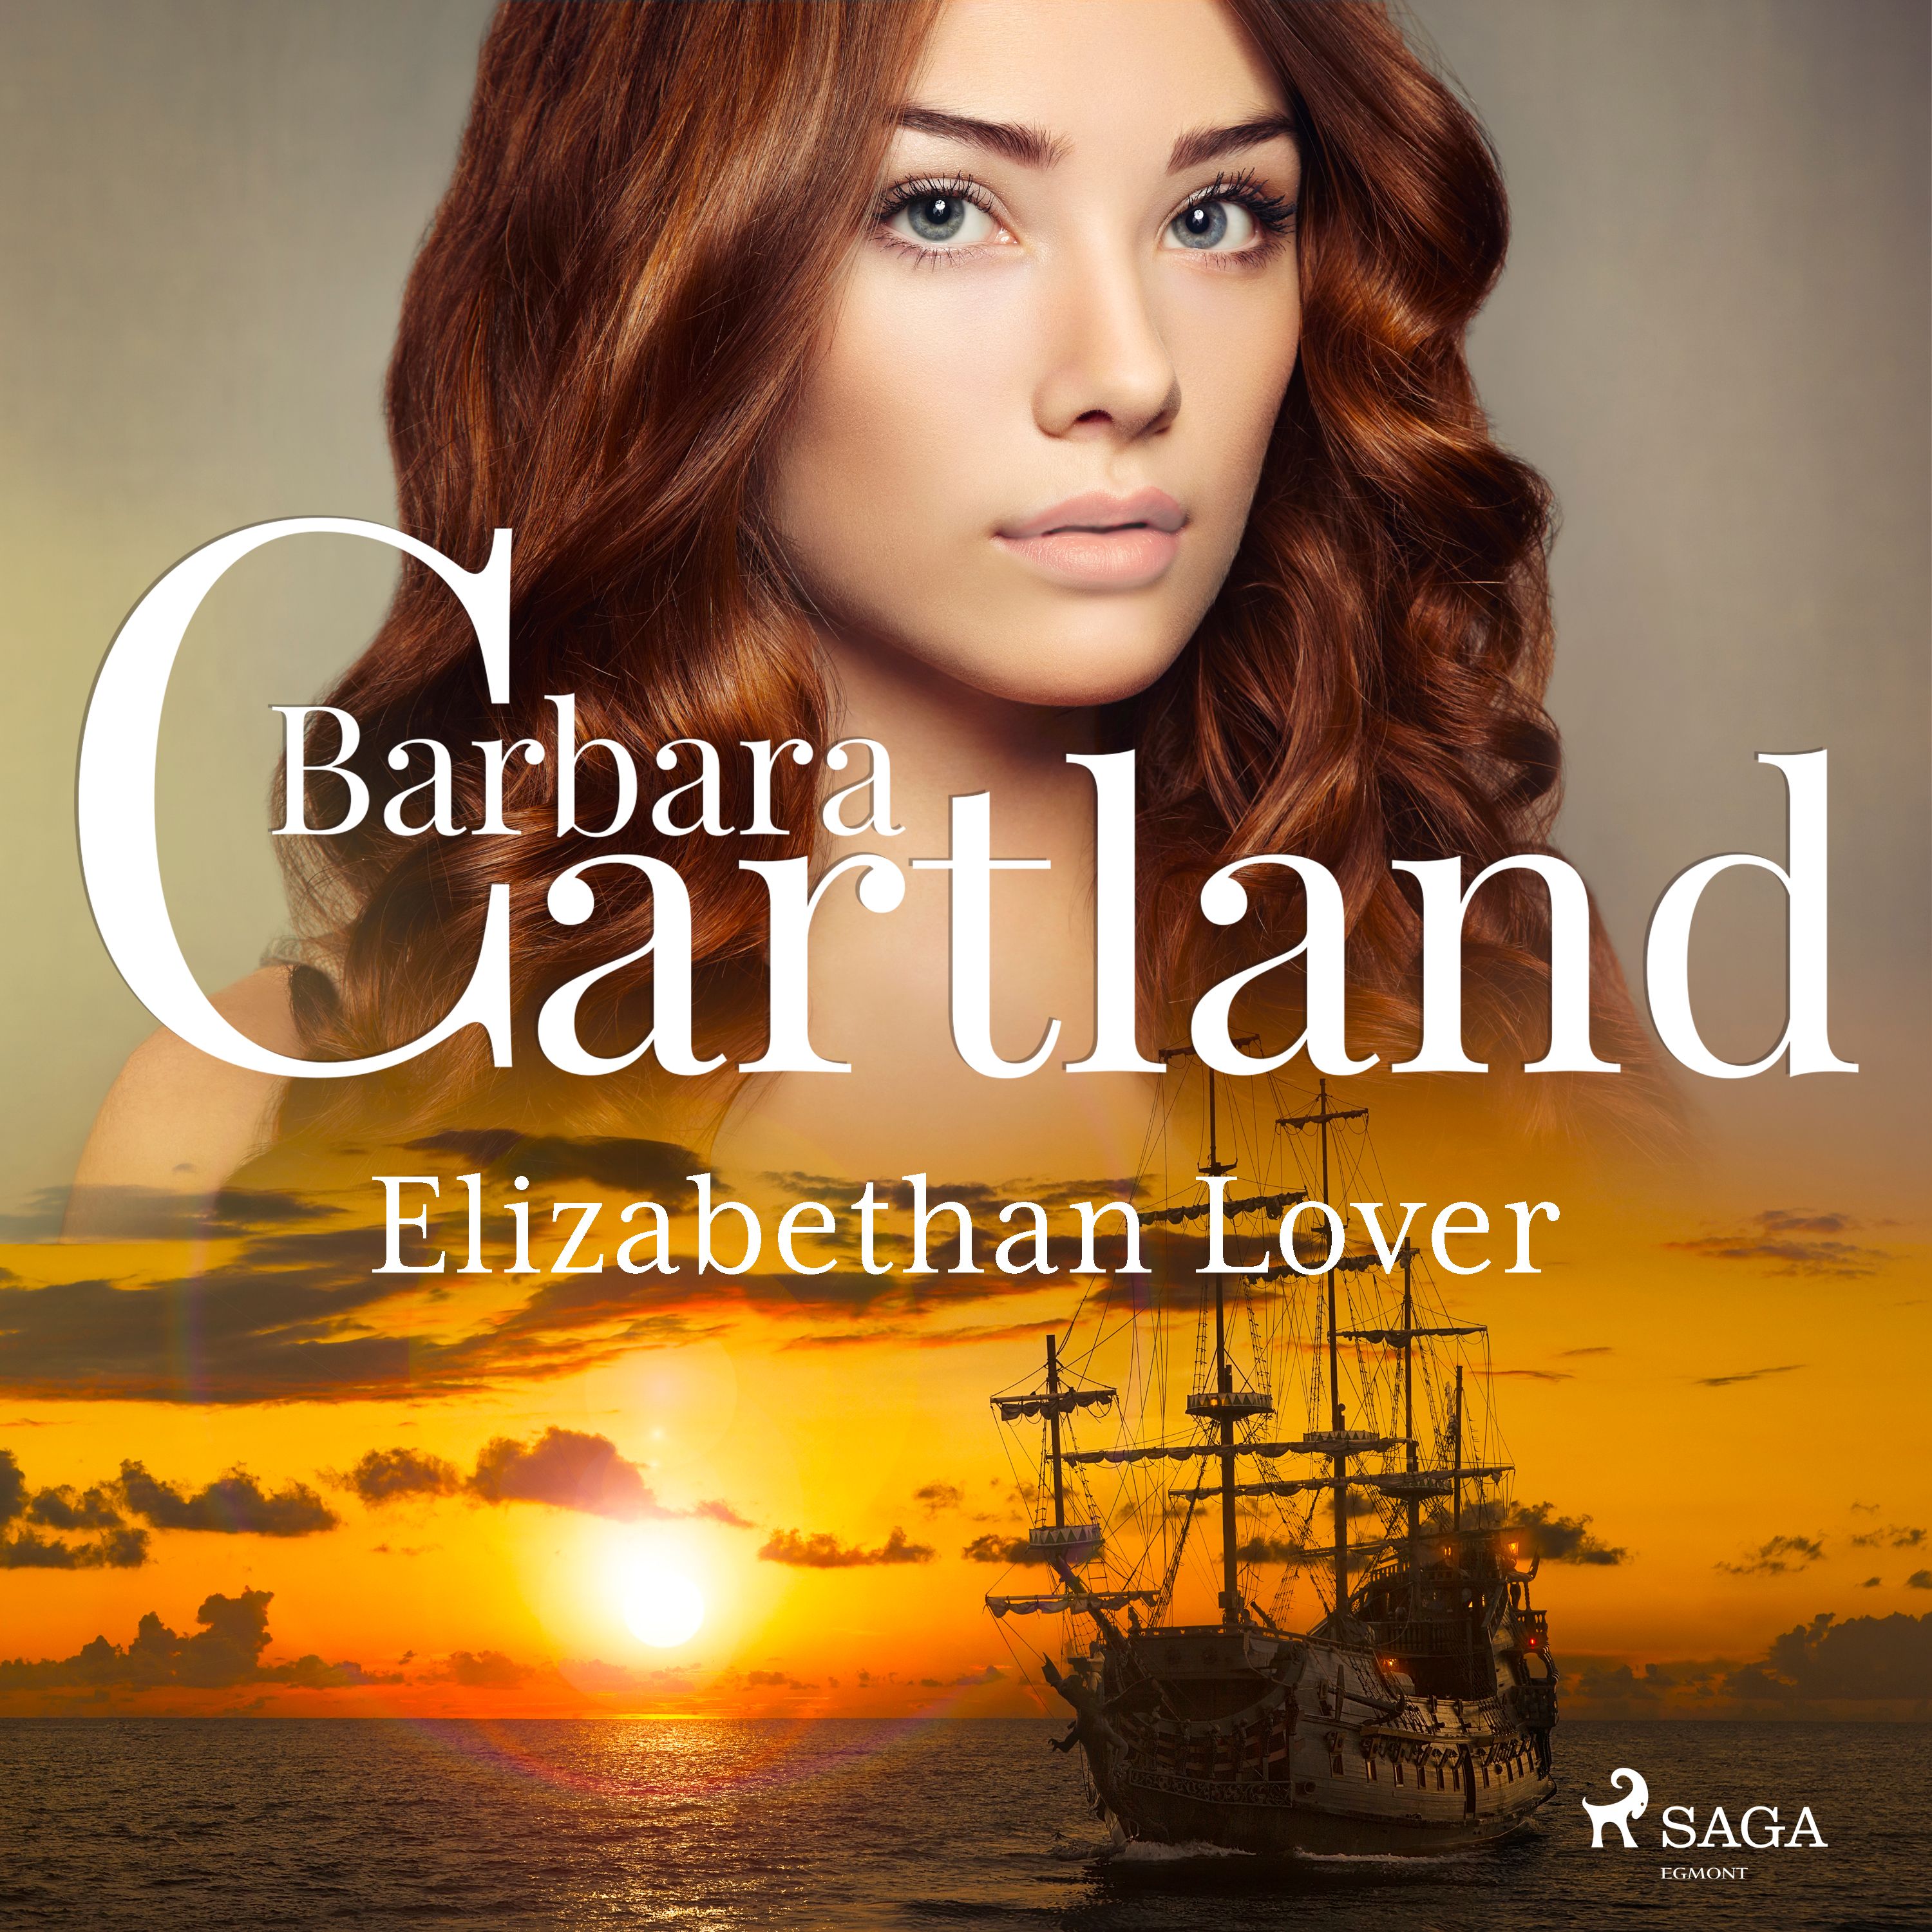 Elizabethan Lover, lydbog af Barbara Cartland